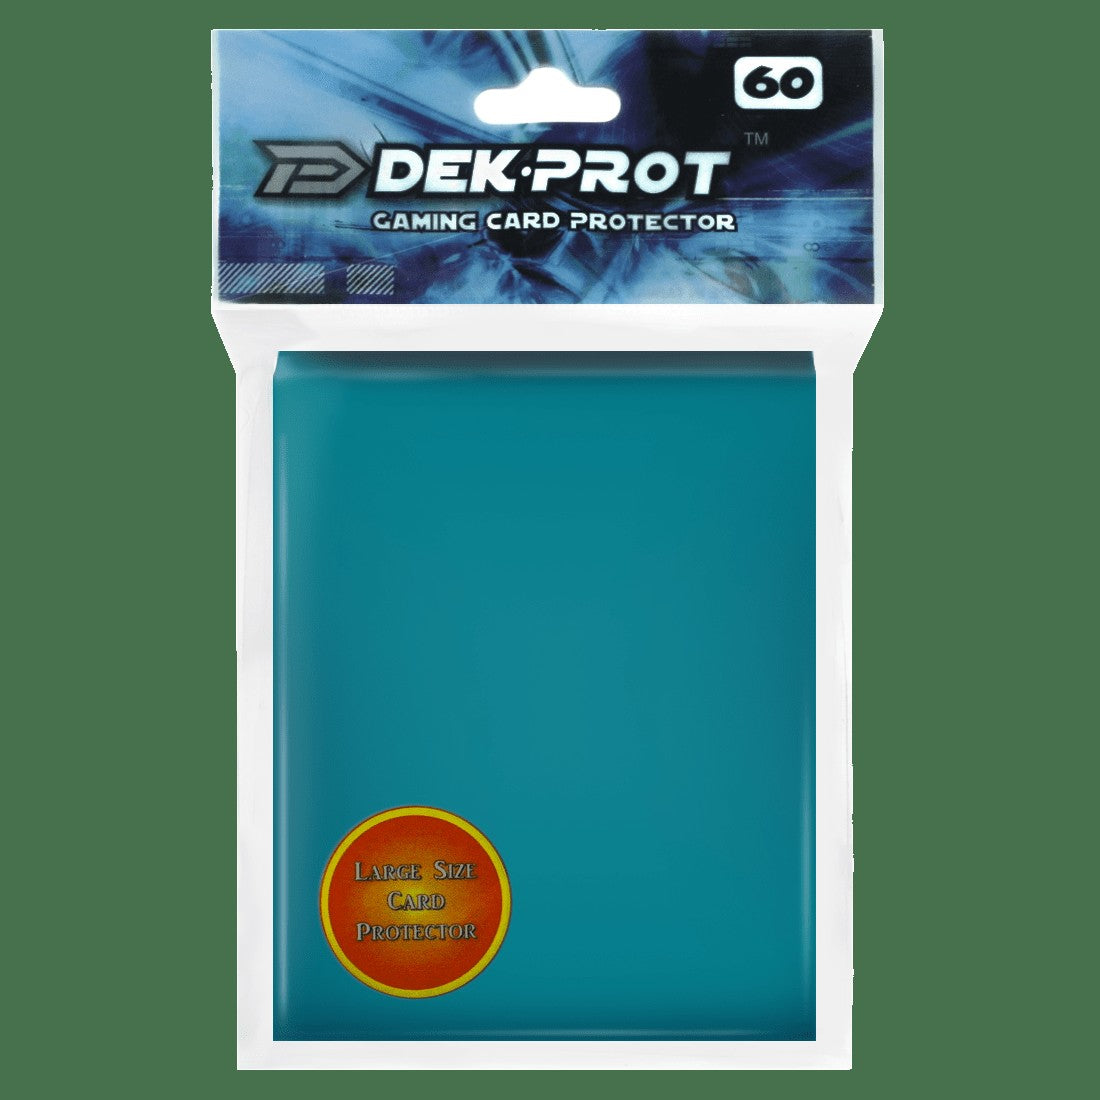 Dek Prot Standard Sized Card Sleeves - Teal Green (60 Card Sleeves)